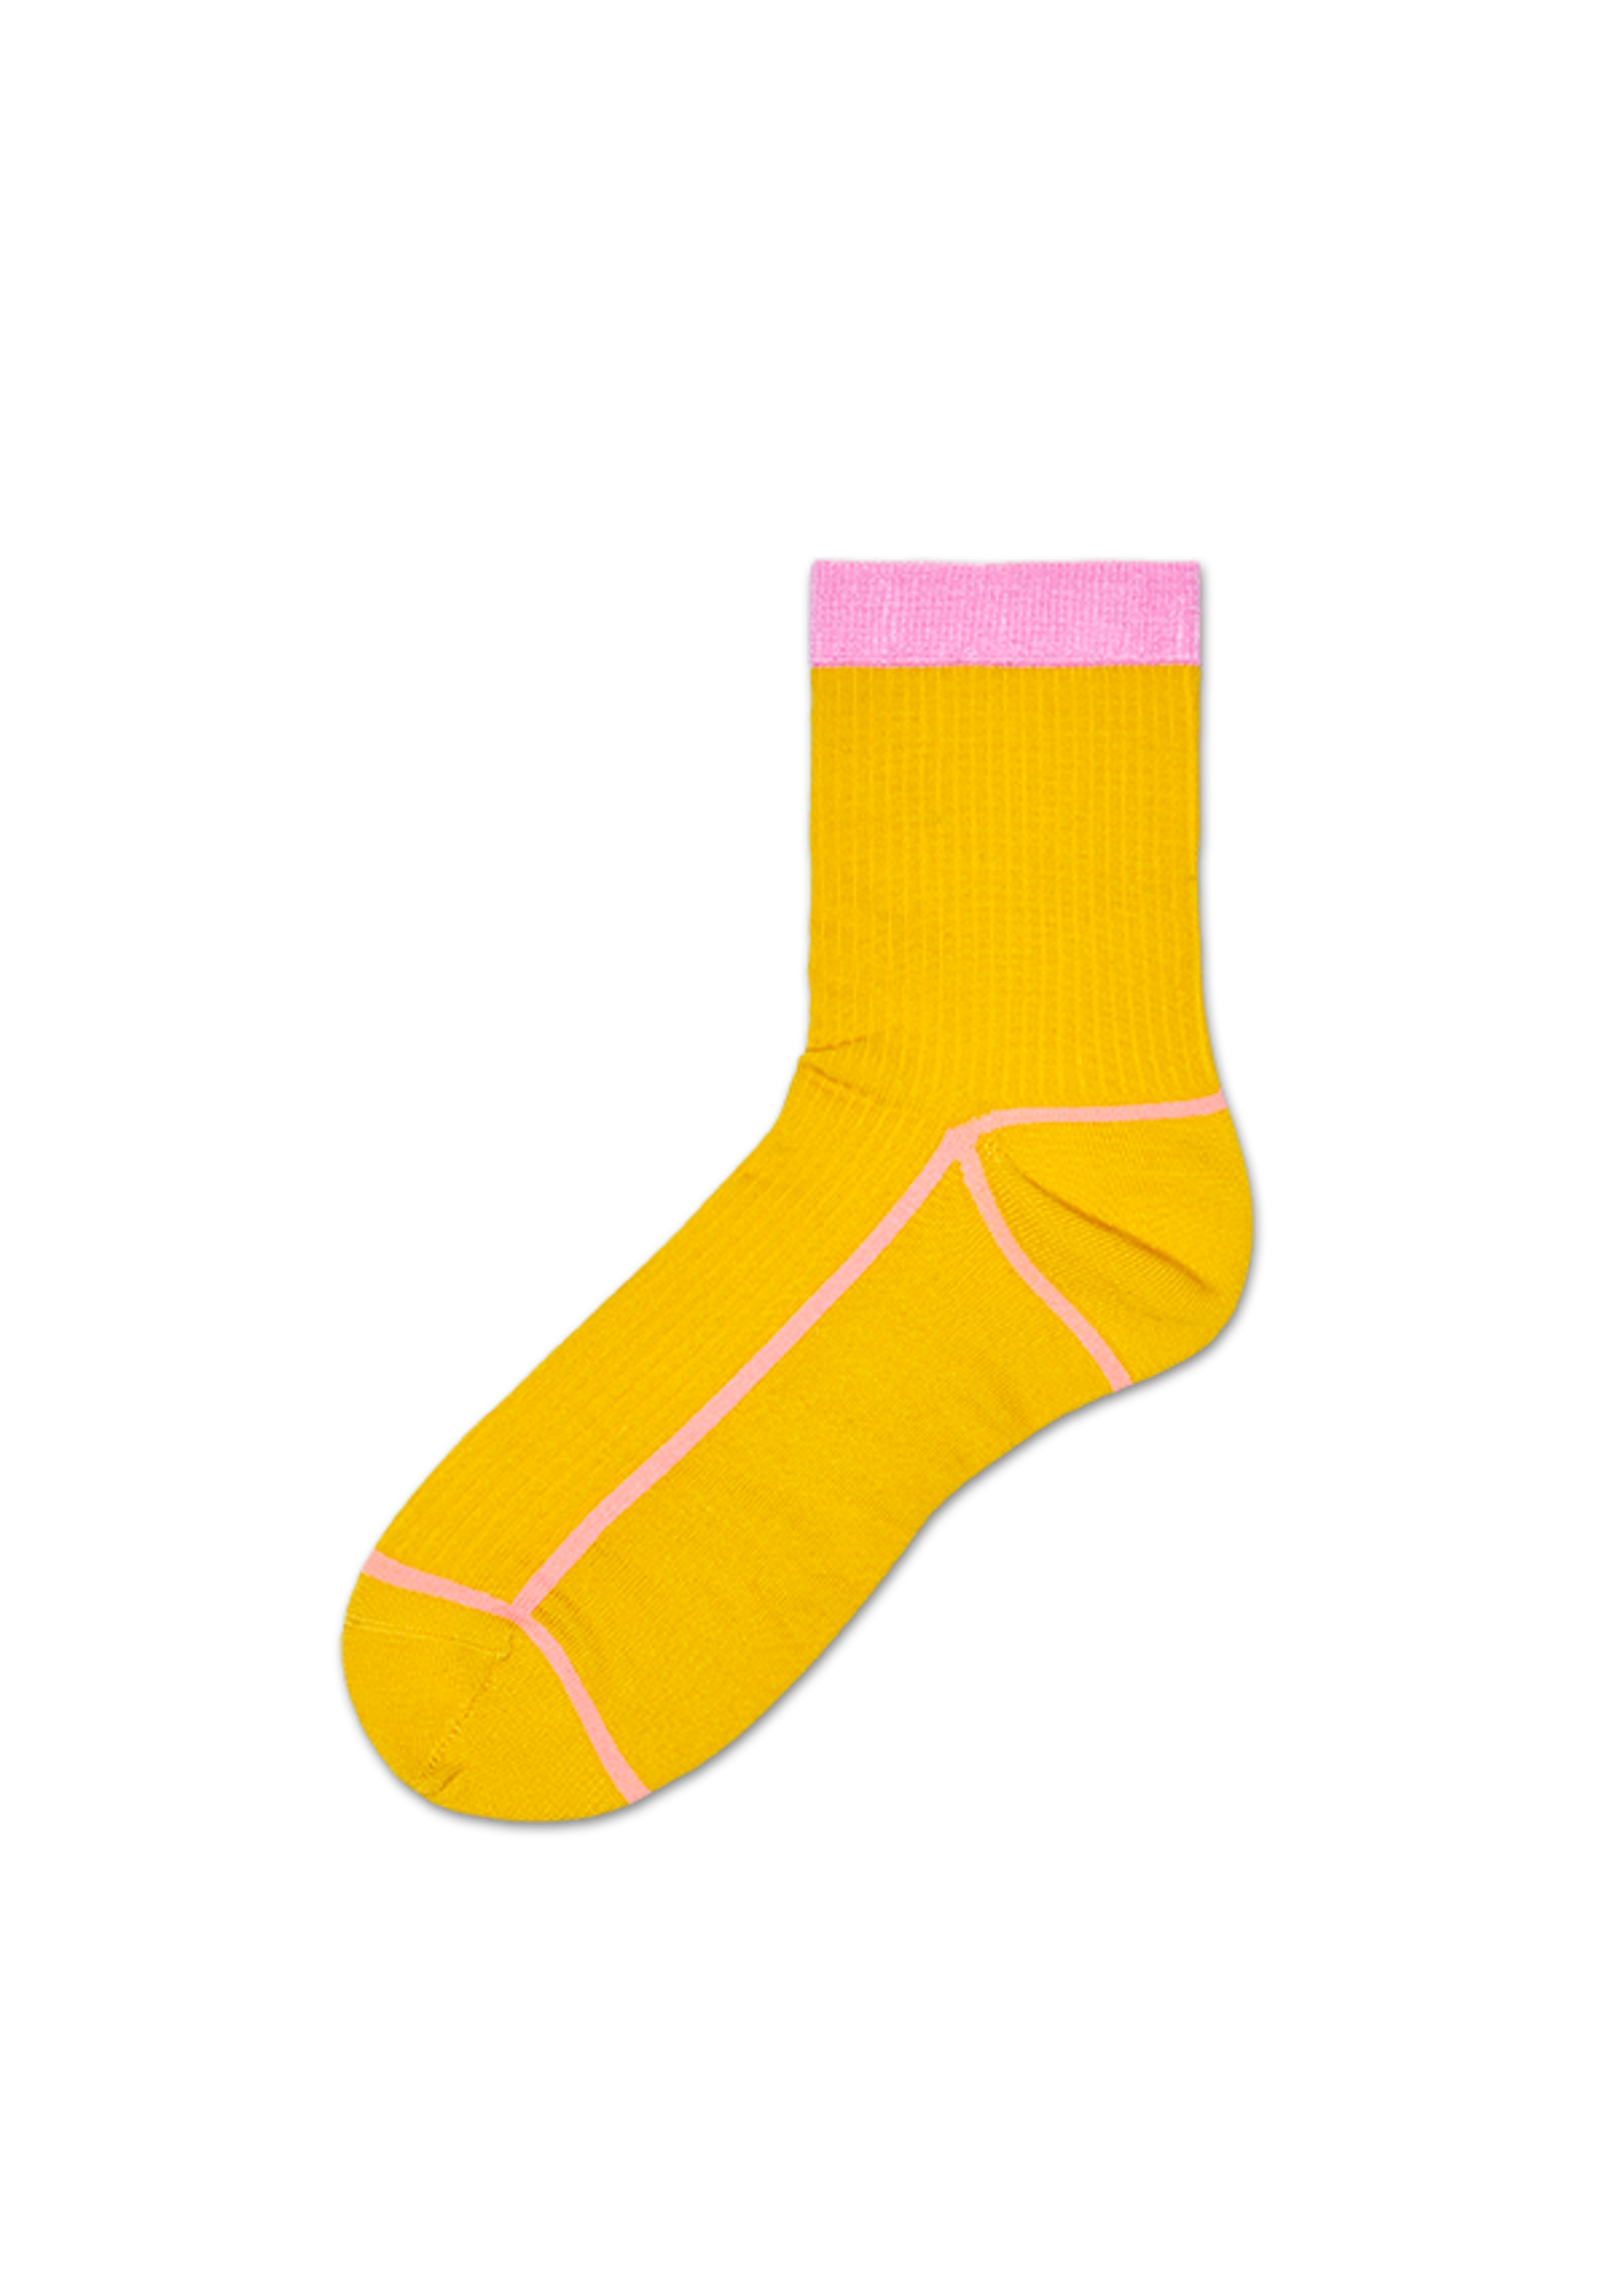 I made socks – FehrTrade